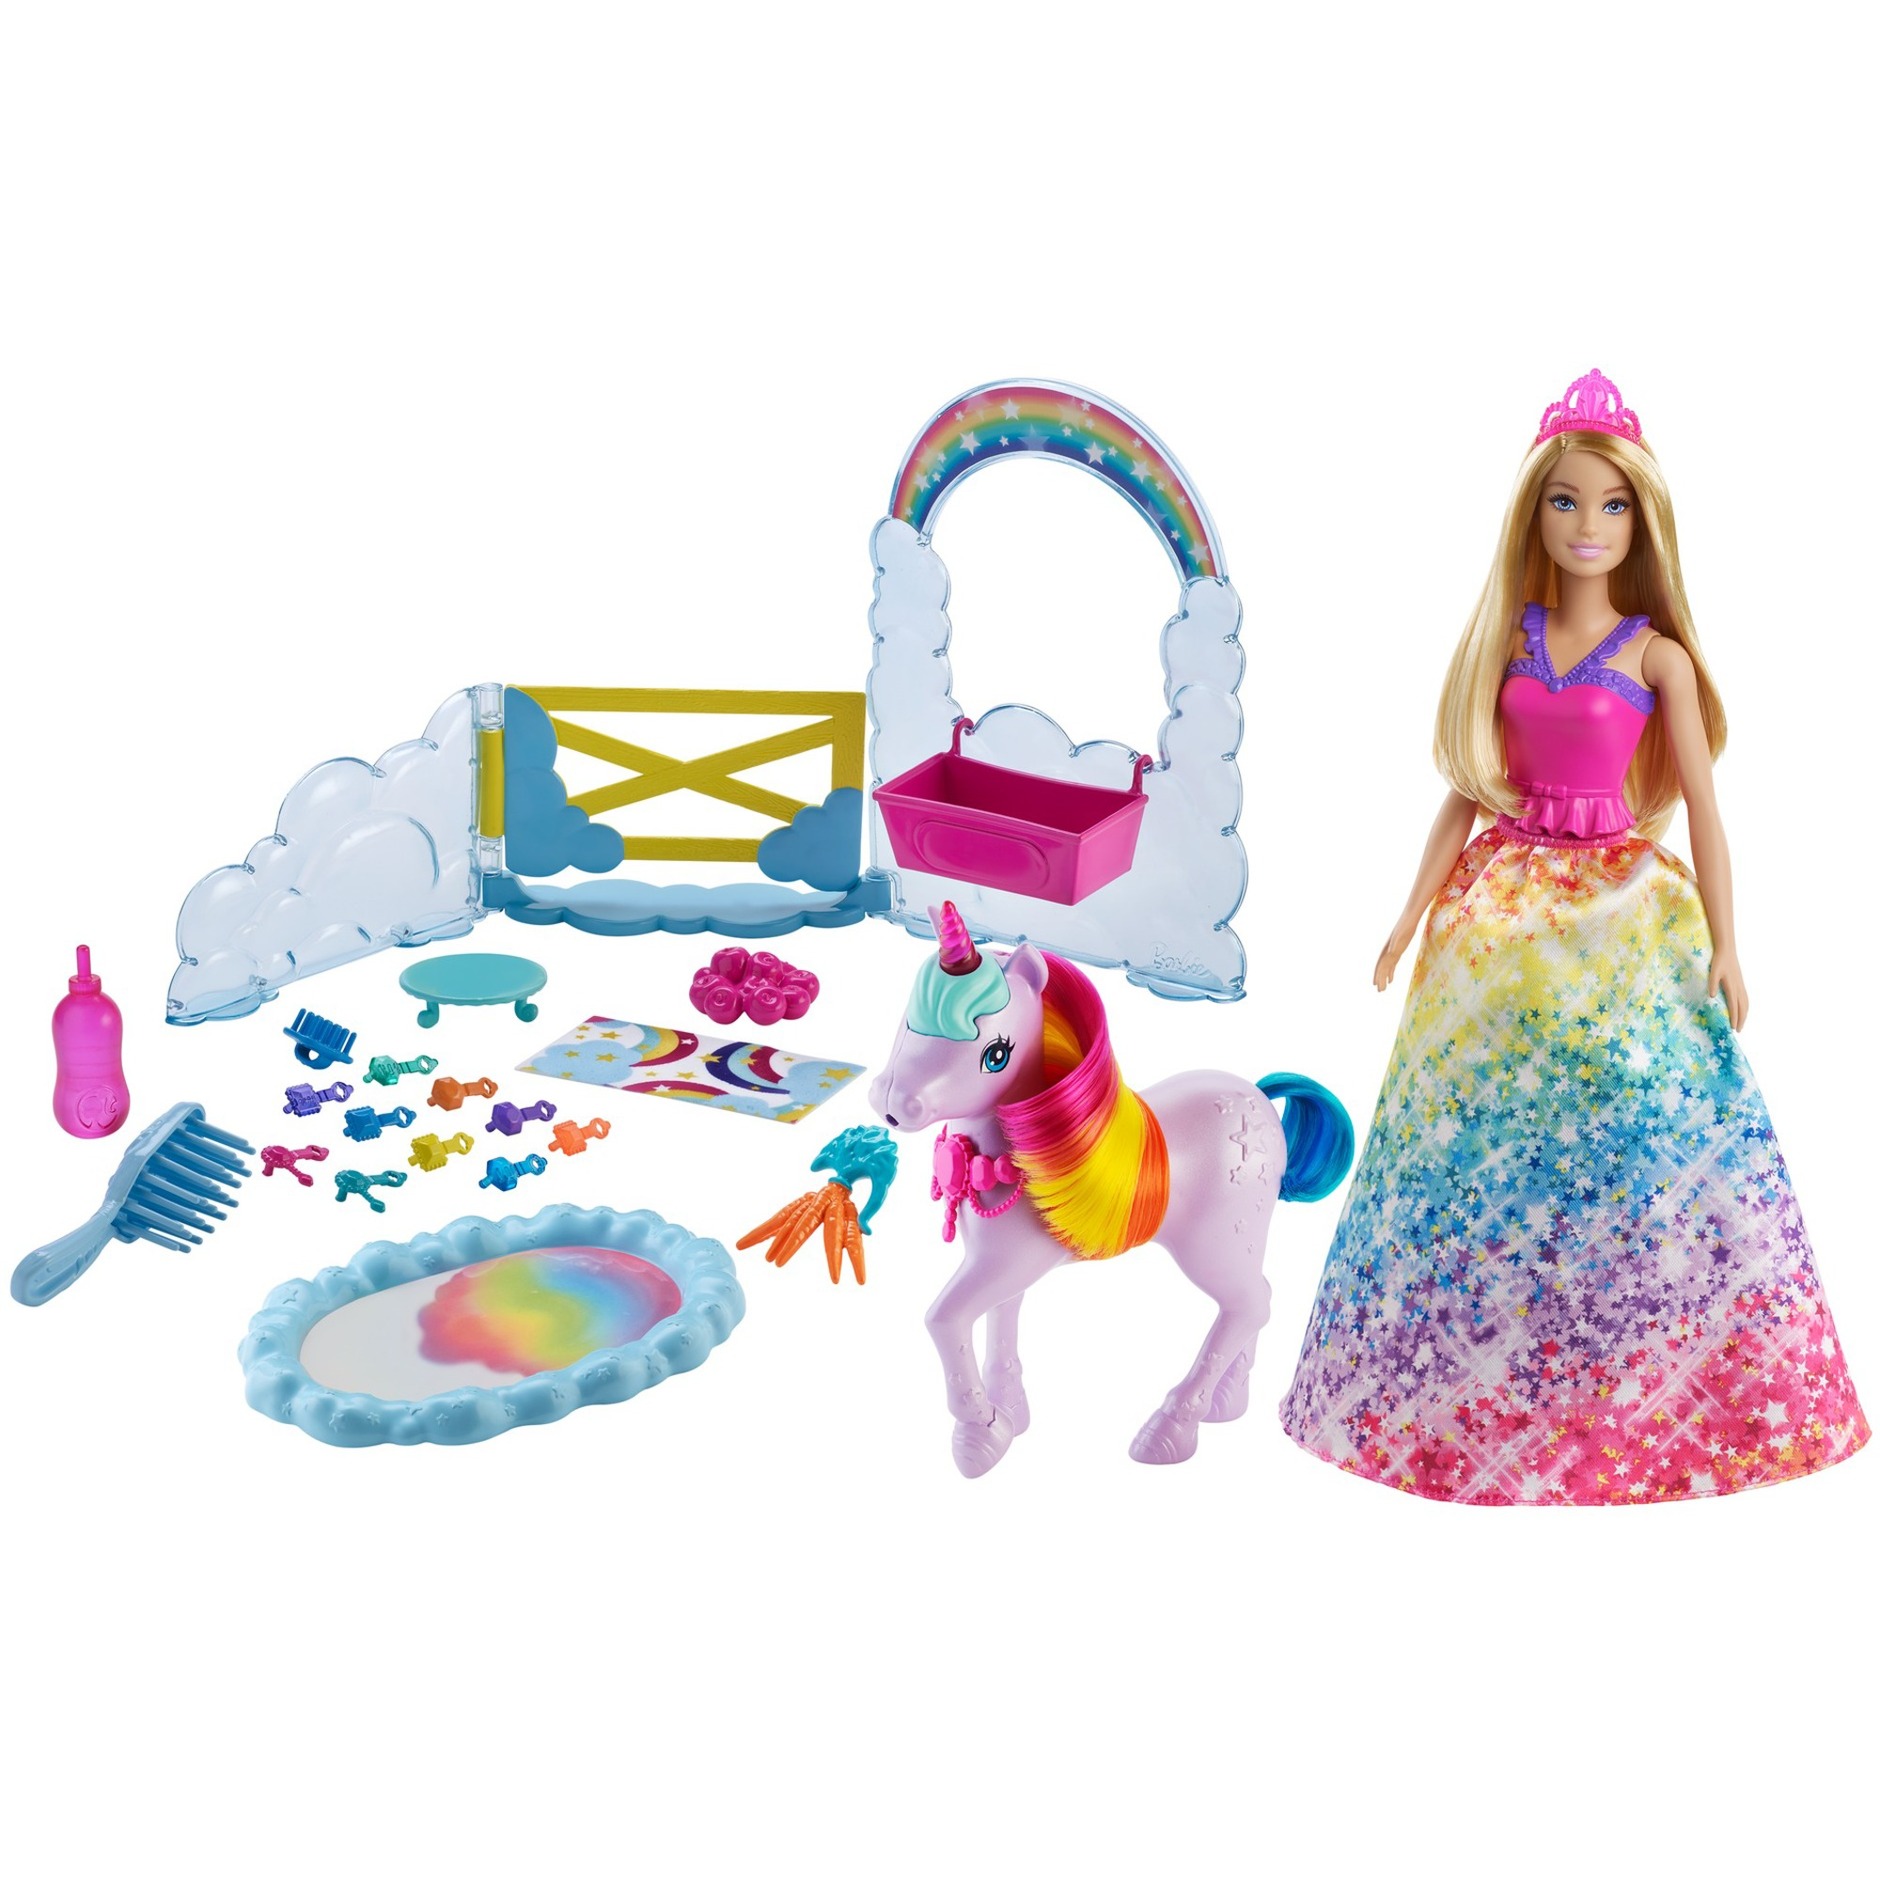 Image of Alternate - Barbie Dreamtopia Prinzessin Puppe online einkaufen bei Alternate